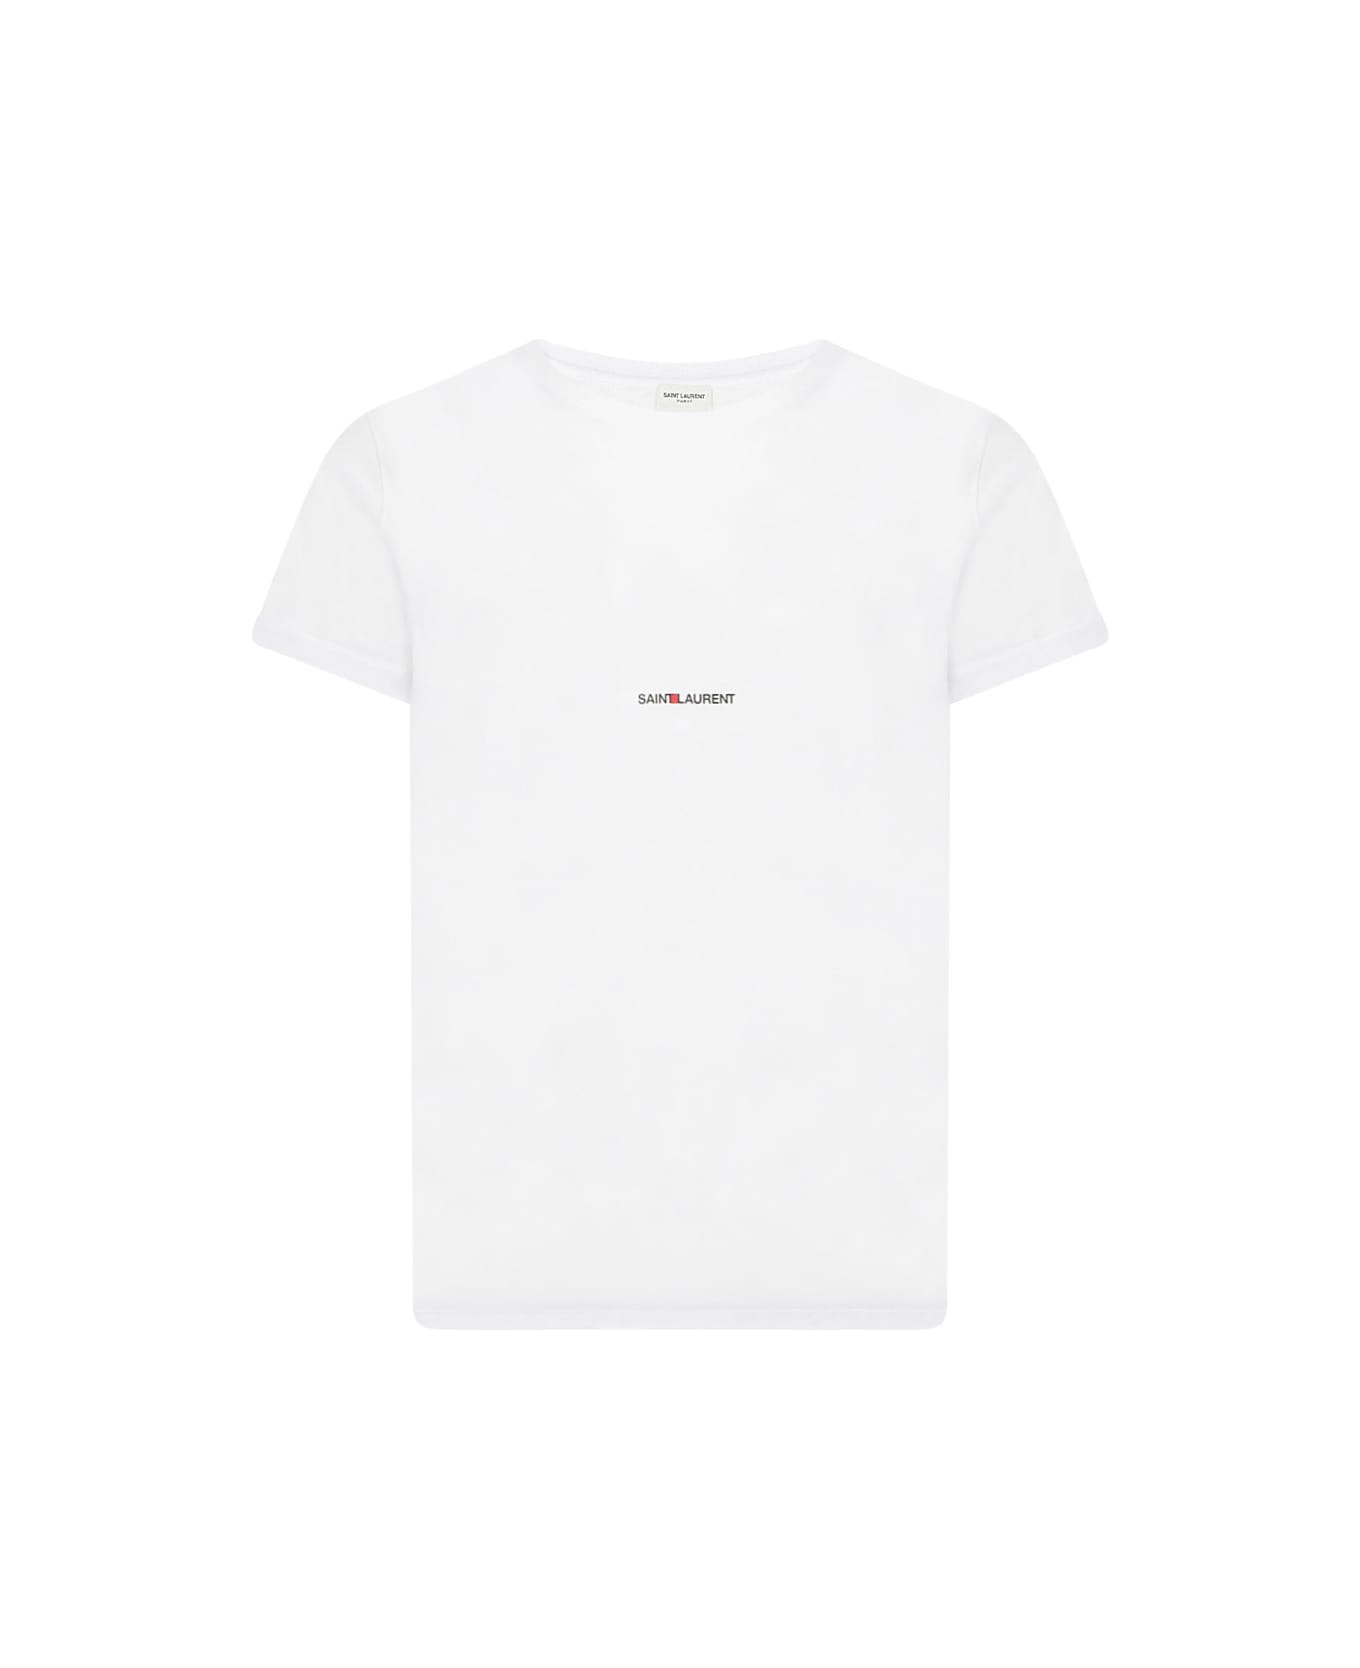 Saint Laurent Cotton T-shirt - White シャツ